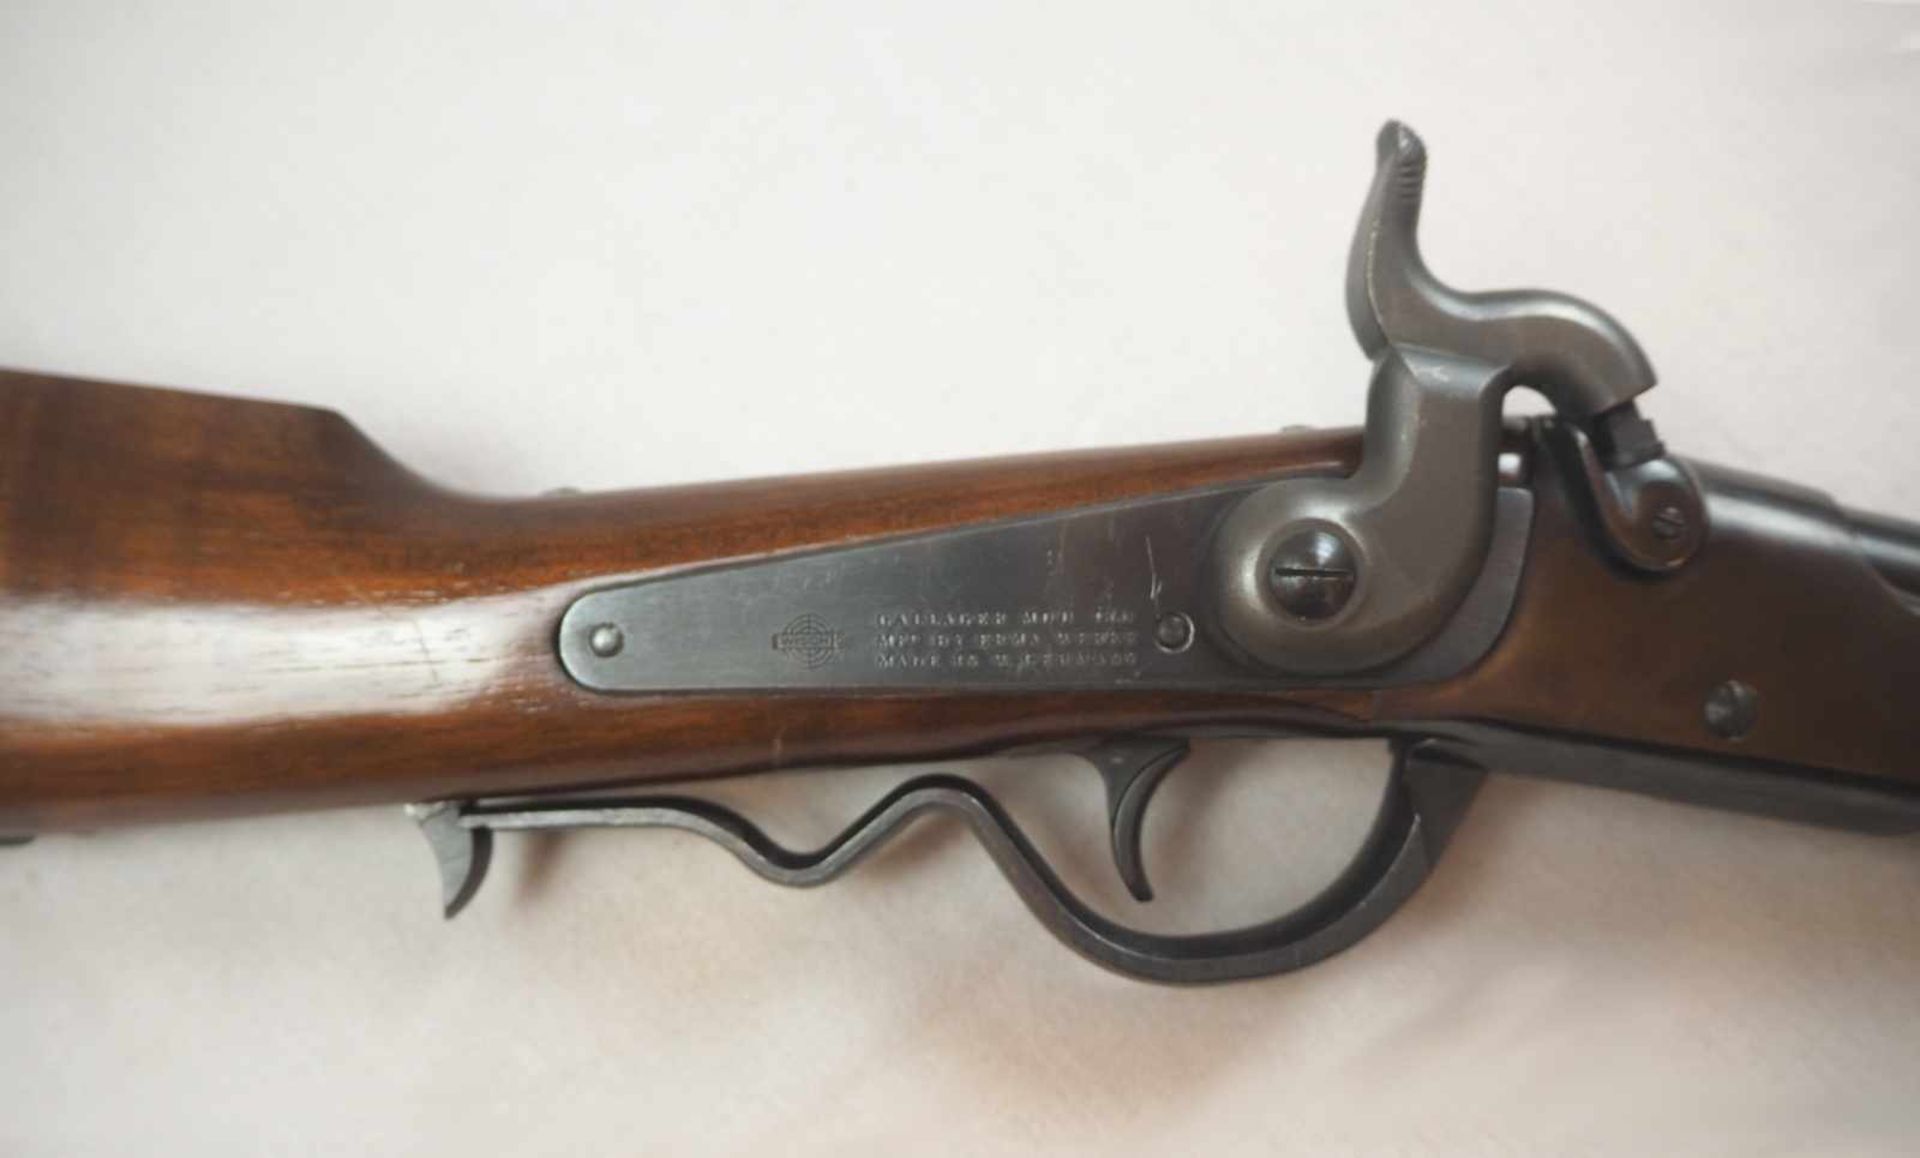 1 Gewehr auf Schloss gem. GALLAGER Mod. 1880 Ermawerke W. GermanyCal. .54 Holzschaft L ca. 99cm - Bild 2 aus 2